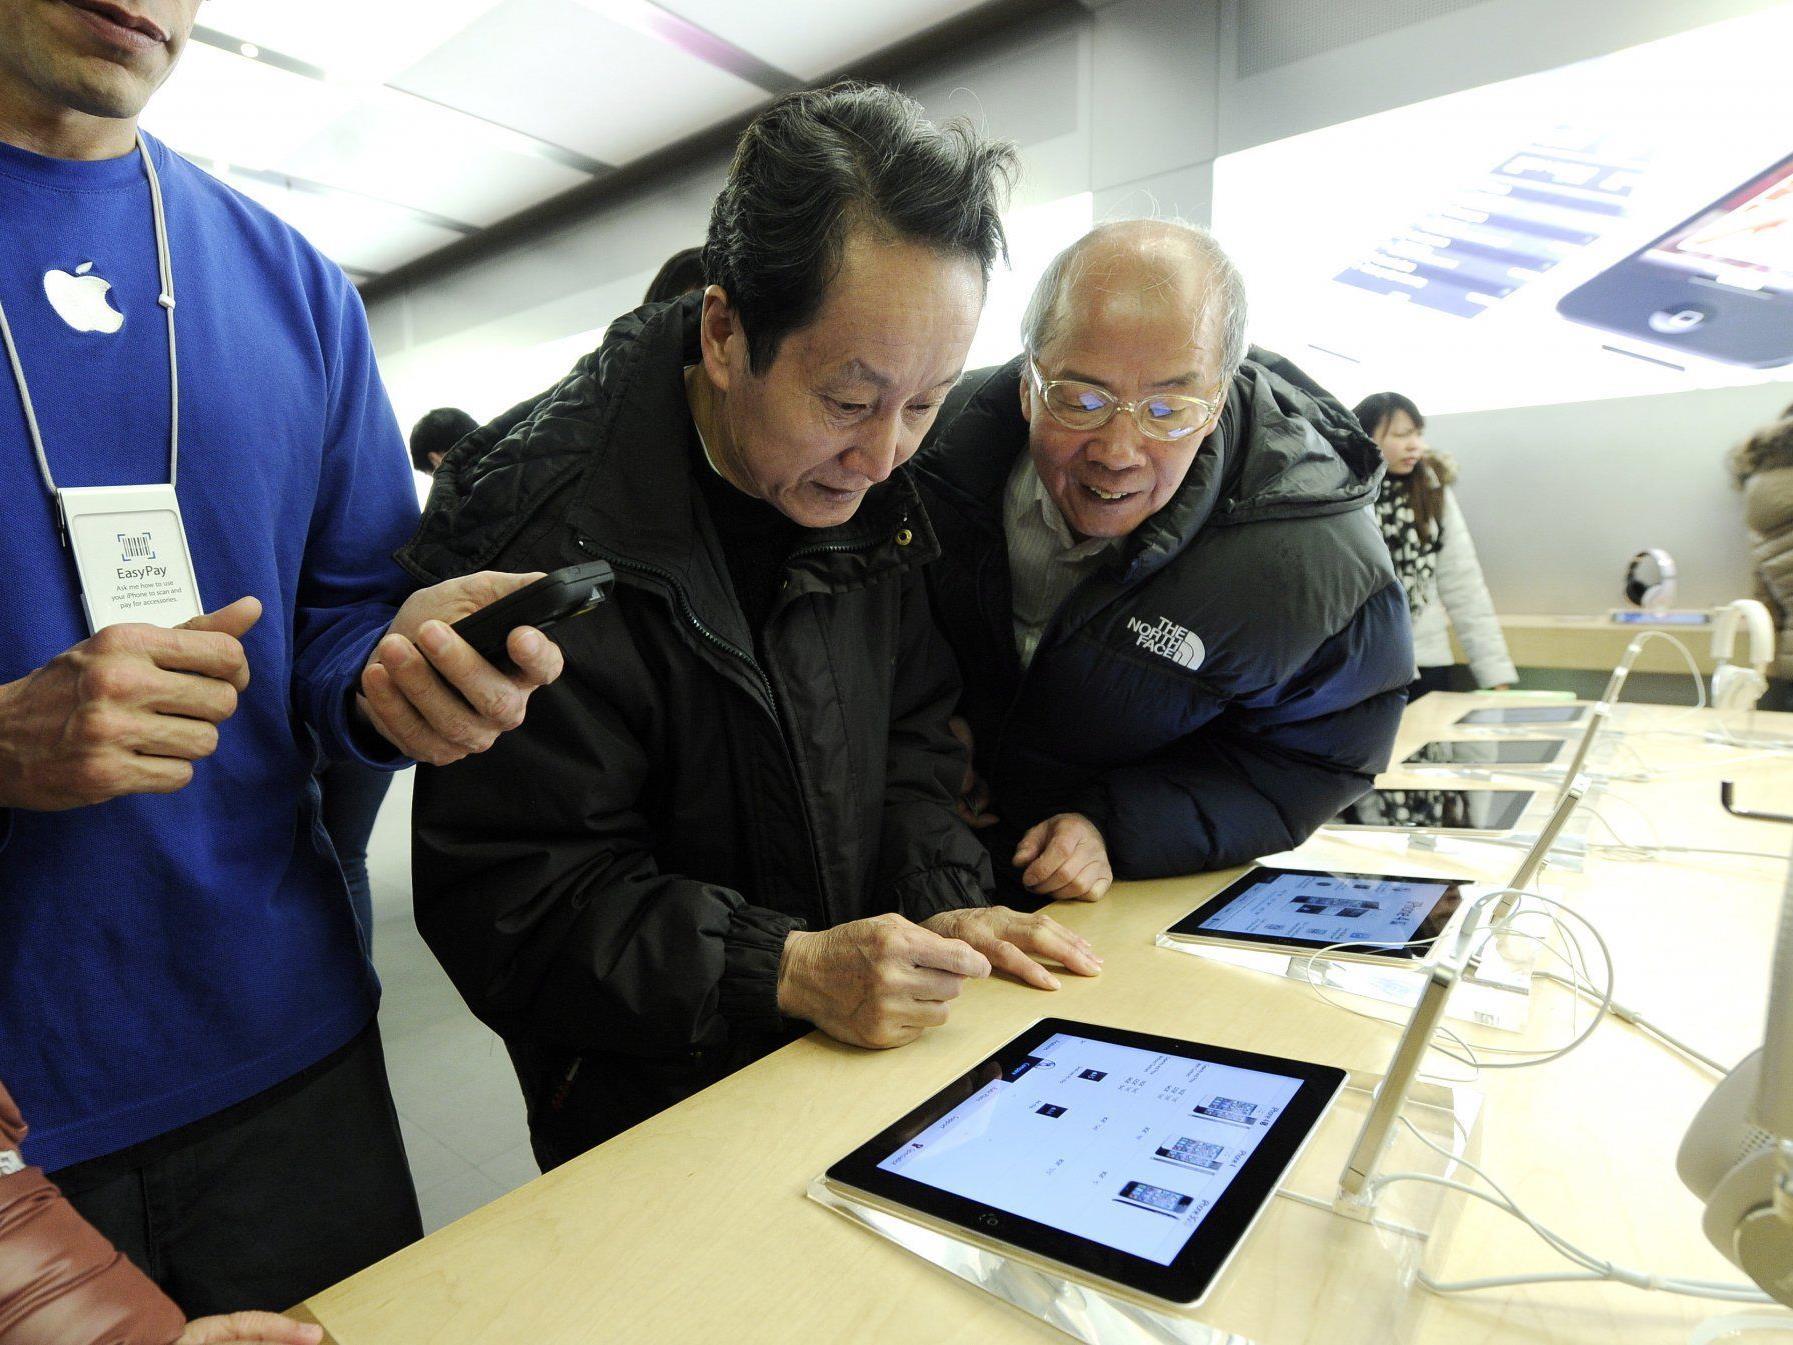 Jubelstimmung bei Apple: die neuen iPads gehen weg wie warme Semmeln.